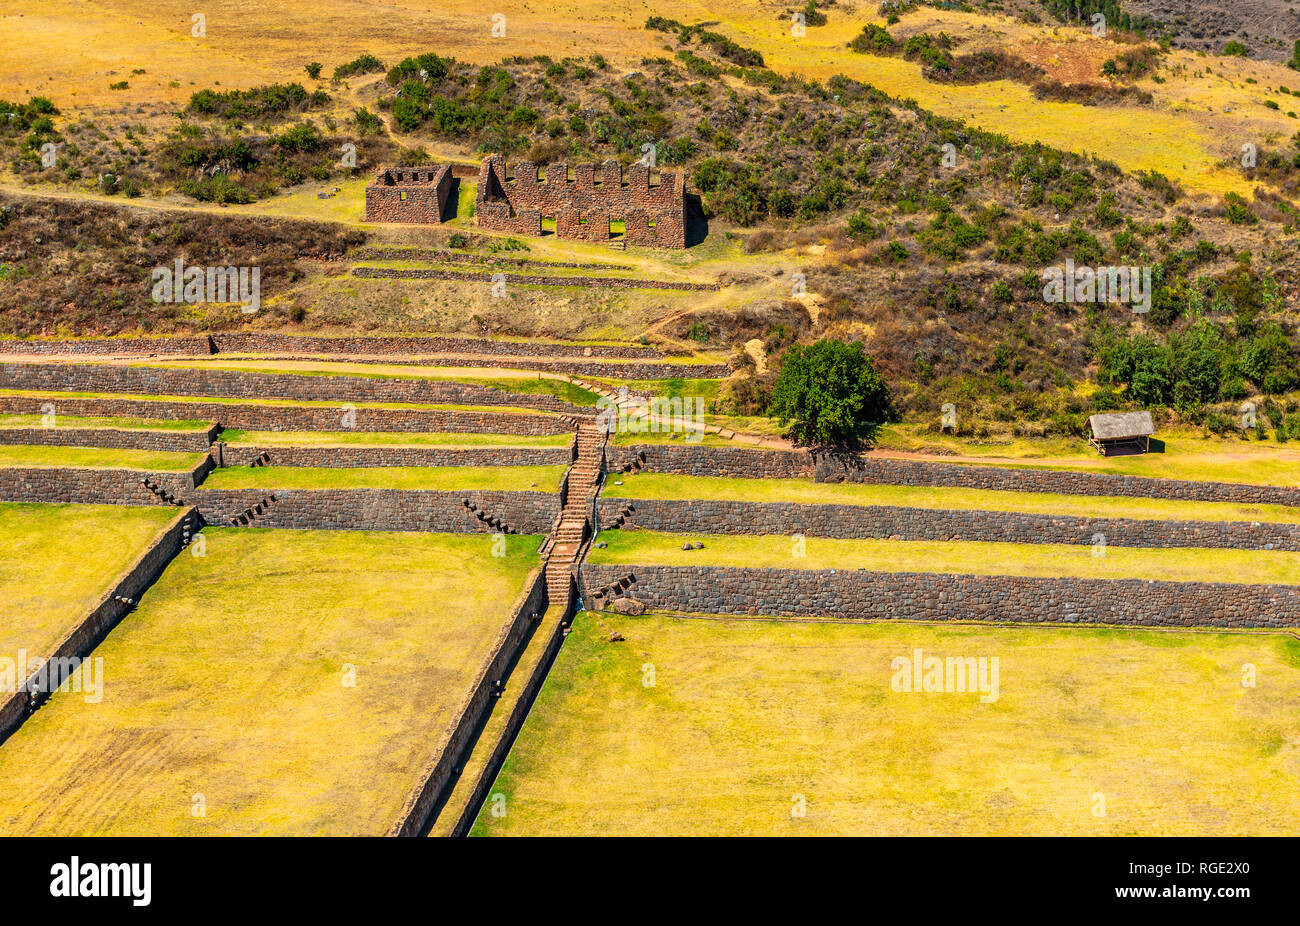 Le rovine Inca e il sito archeologico di Tipon con le sue magnifiche terrazze agricoltura nella Valle Sacra degli Inca vicino a Cusco, Perù. Foto Stock